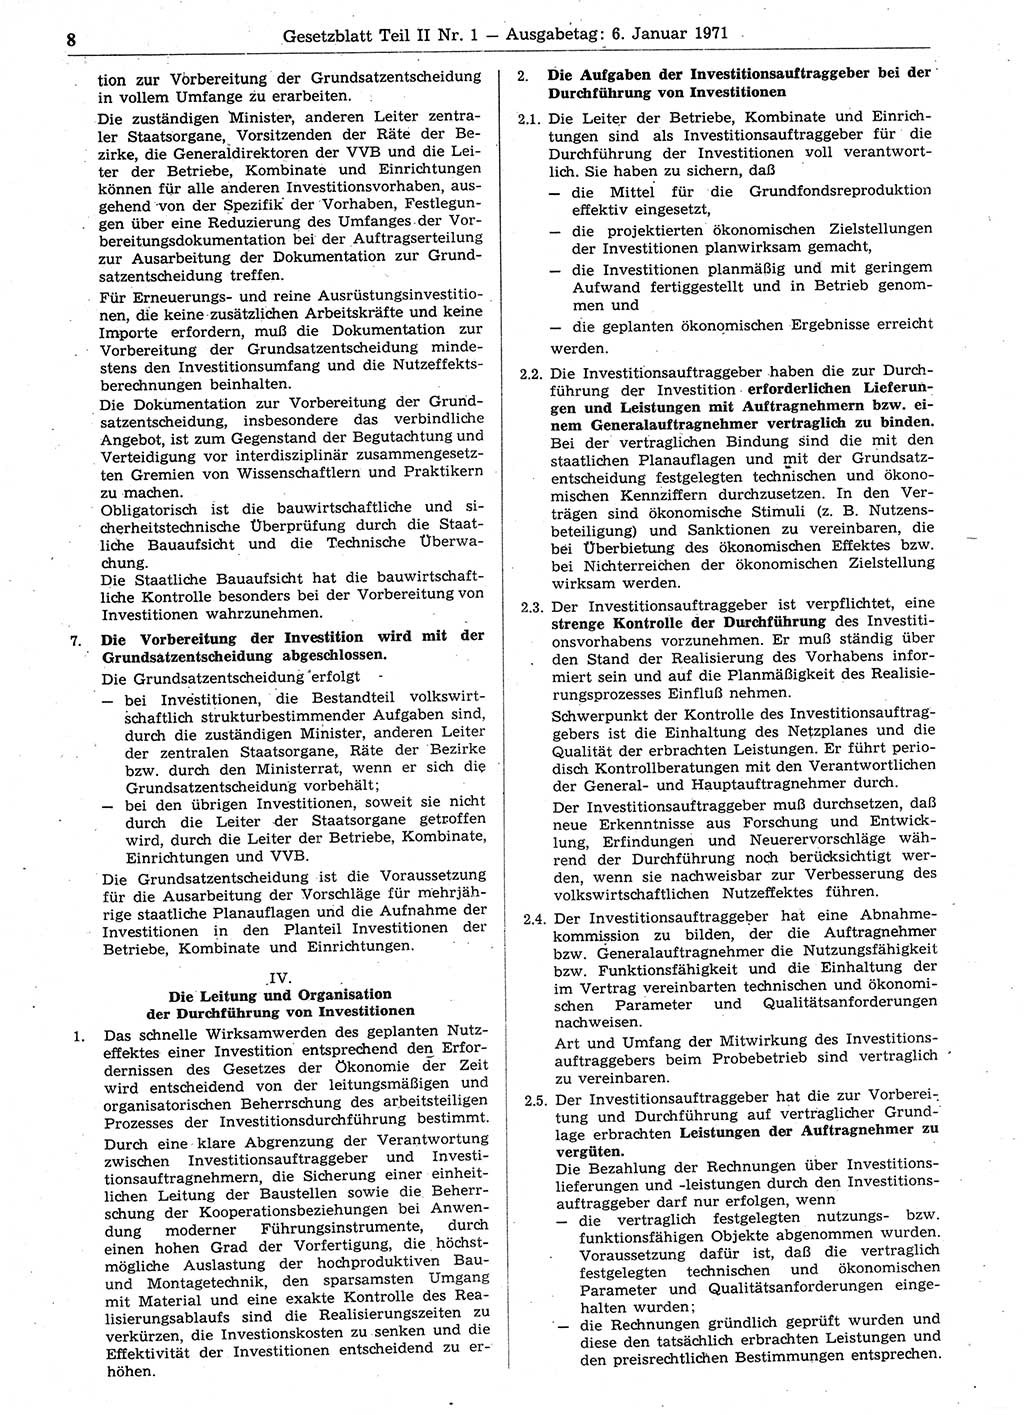 Gesetzblatt (GBl.) der Deutschen Demokratischen Republik (DDR) Teil ⅠⅠ 1971, Seite 8 (GBl. DDR ⅠⅠ 1971, S. 8)